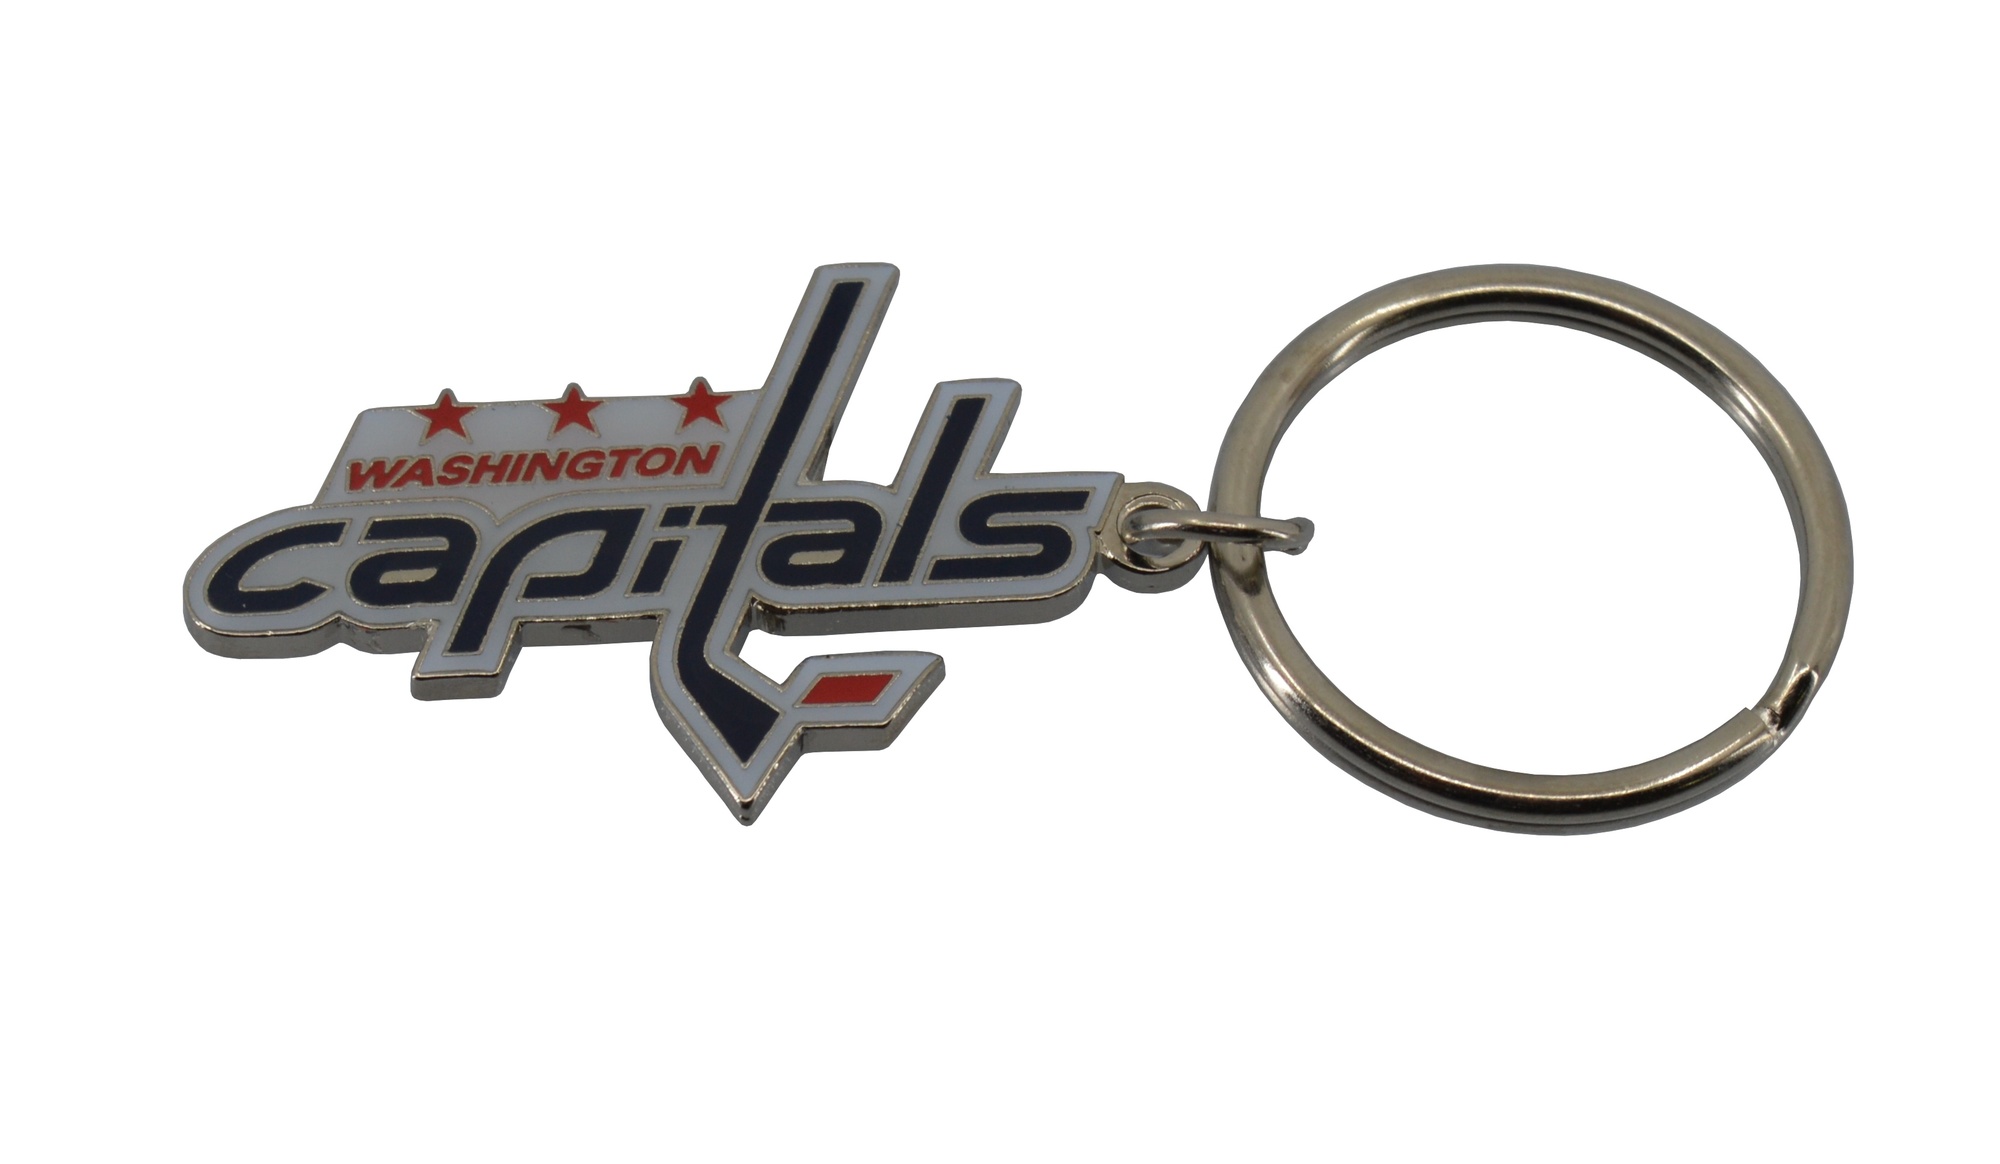 JFSC Přívěšek na klíče JFSC NHL Logo